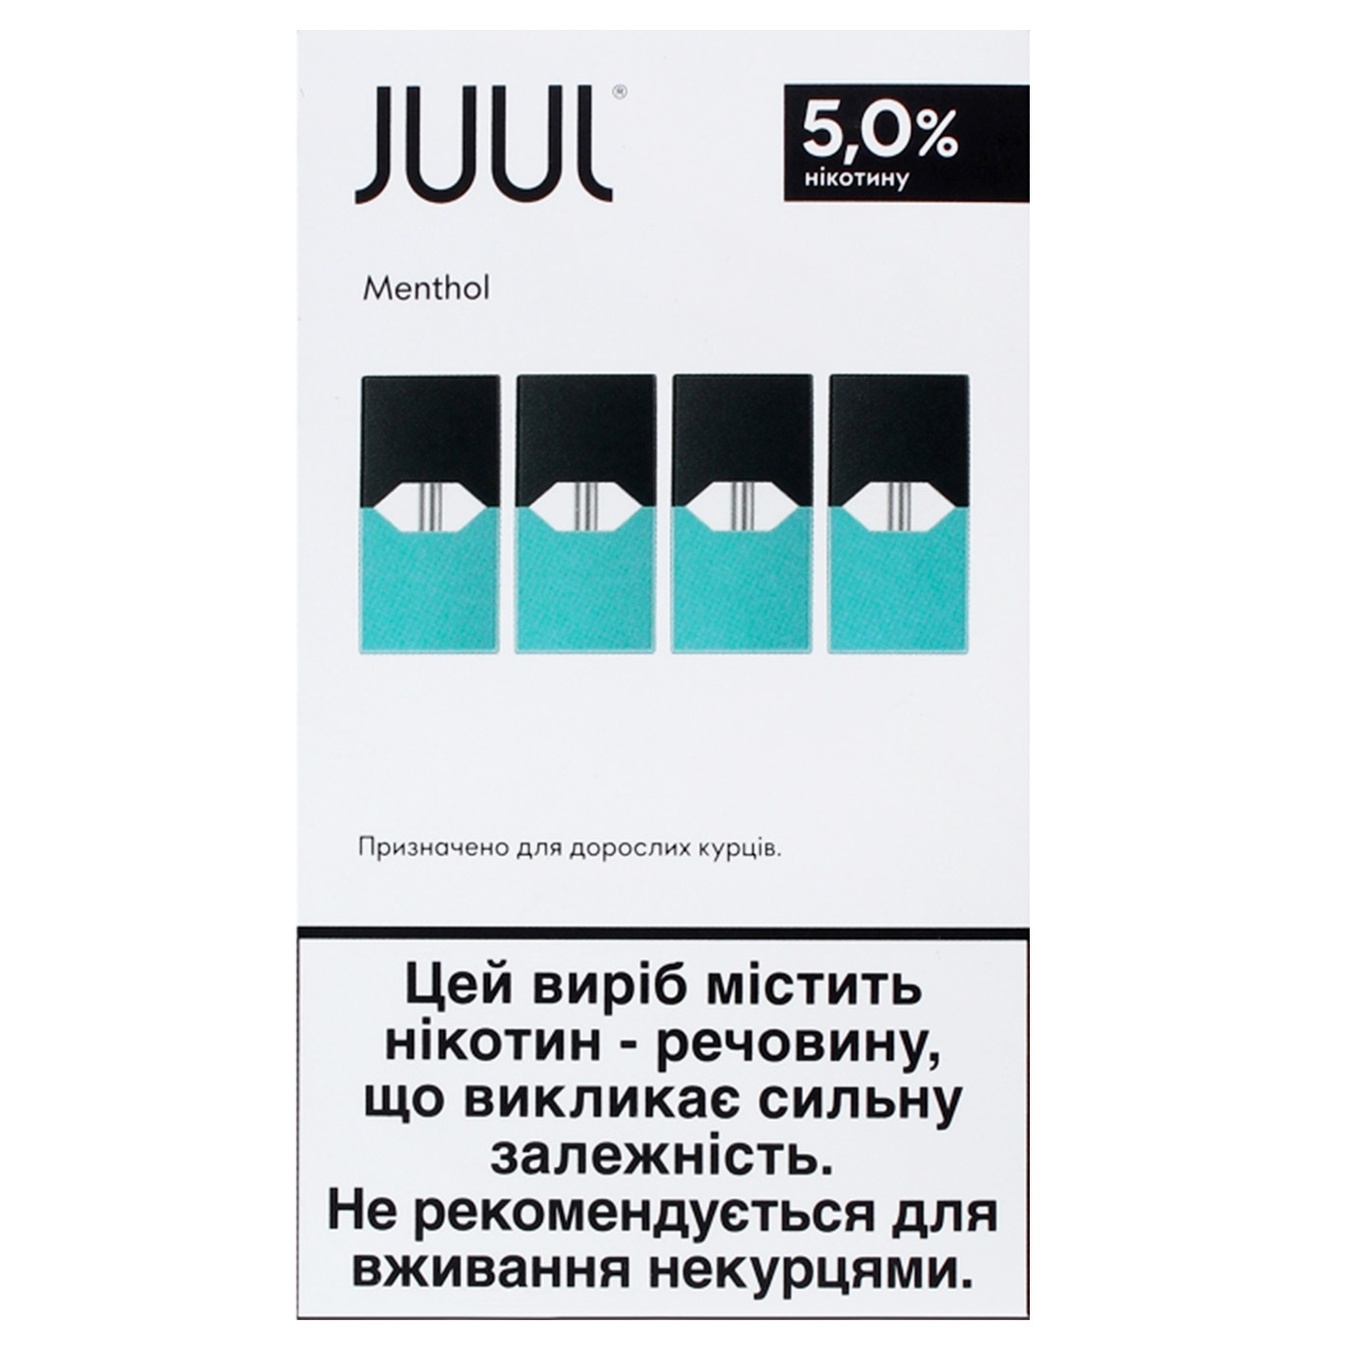 Картридж JUUL Menthol 5% 4 шт (ціна вказана без акцизу)